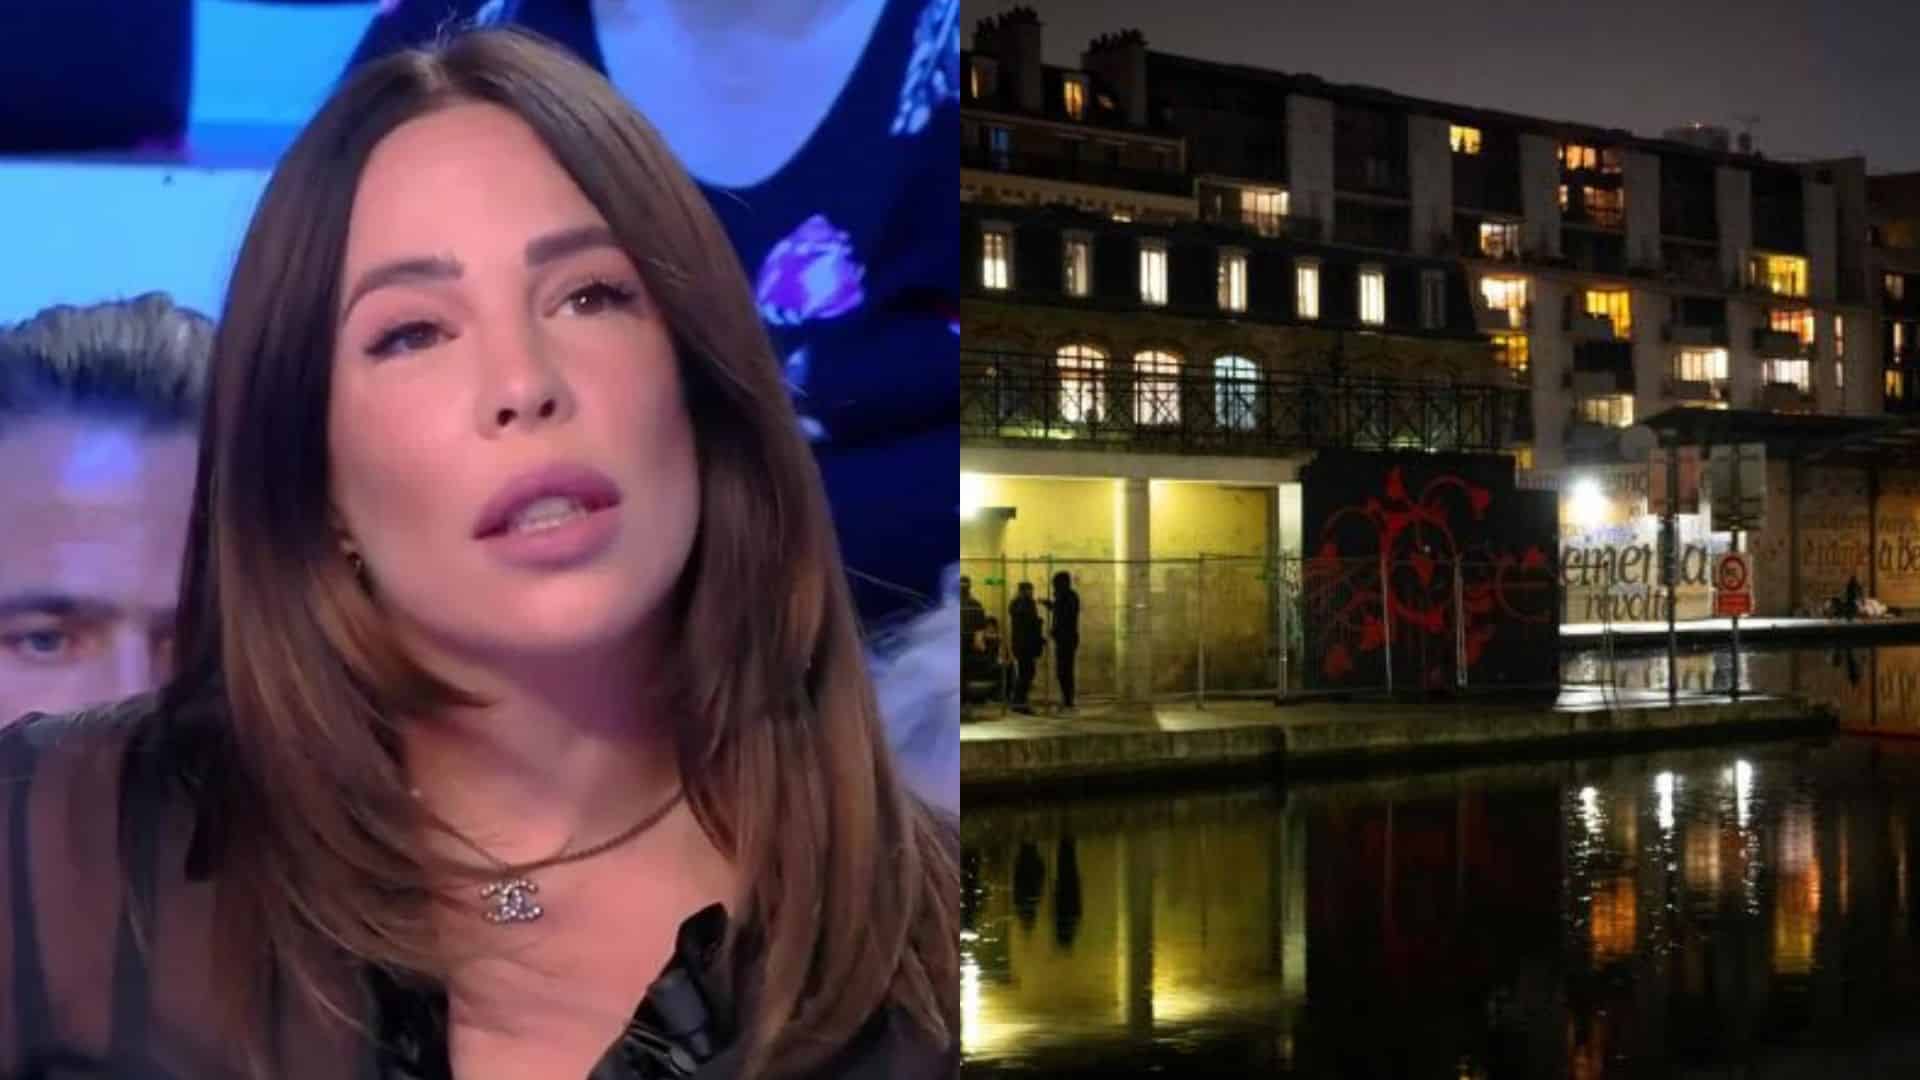 Kim Glow : terrorisée dans Paris en pleine nuit, elle se montre en panique